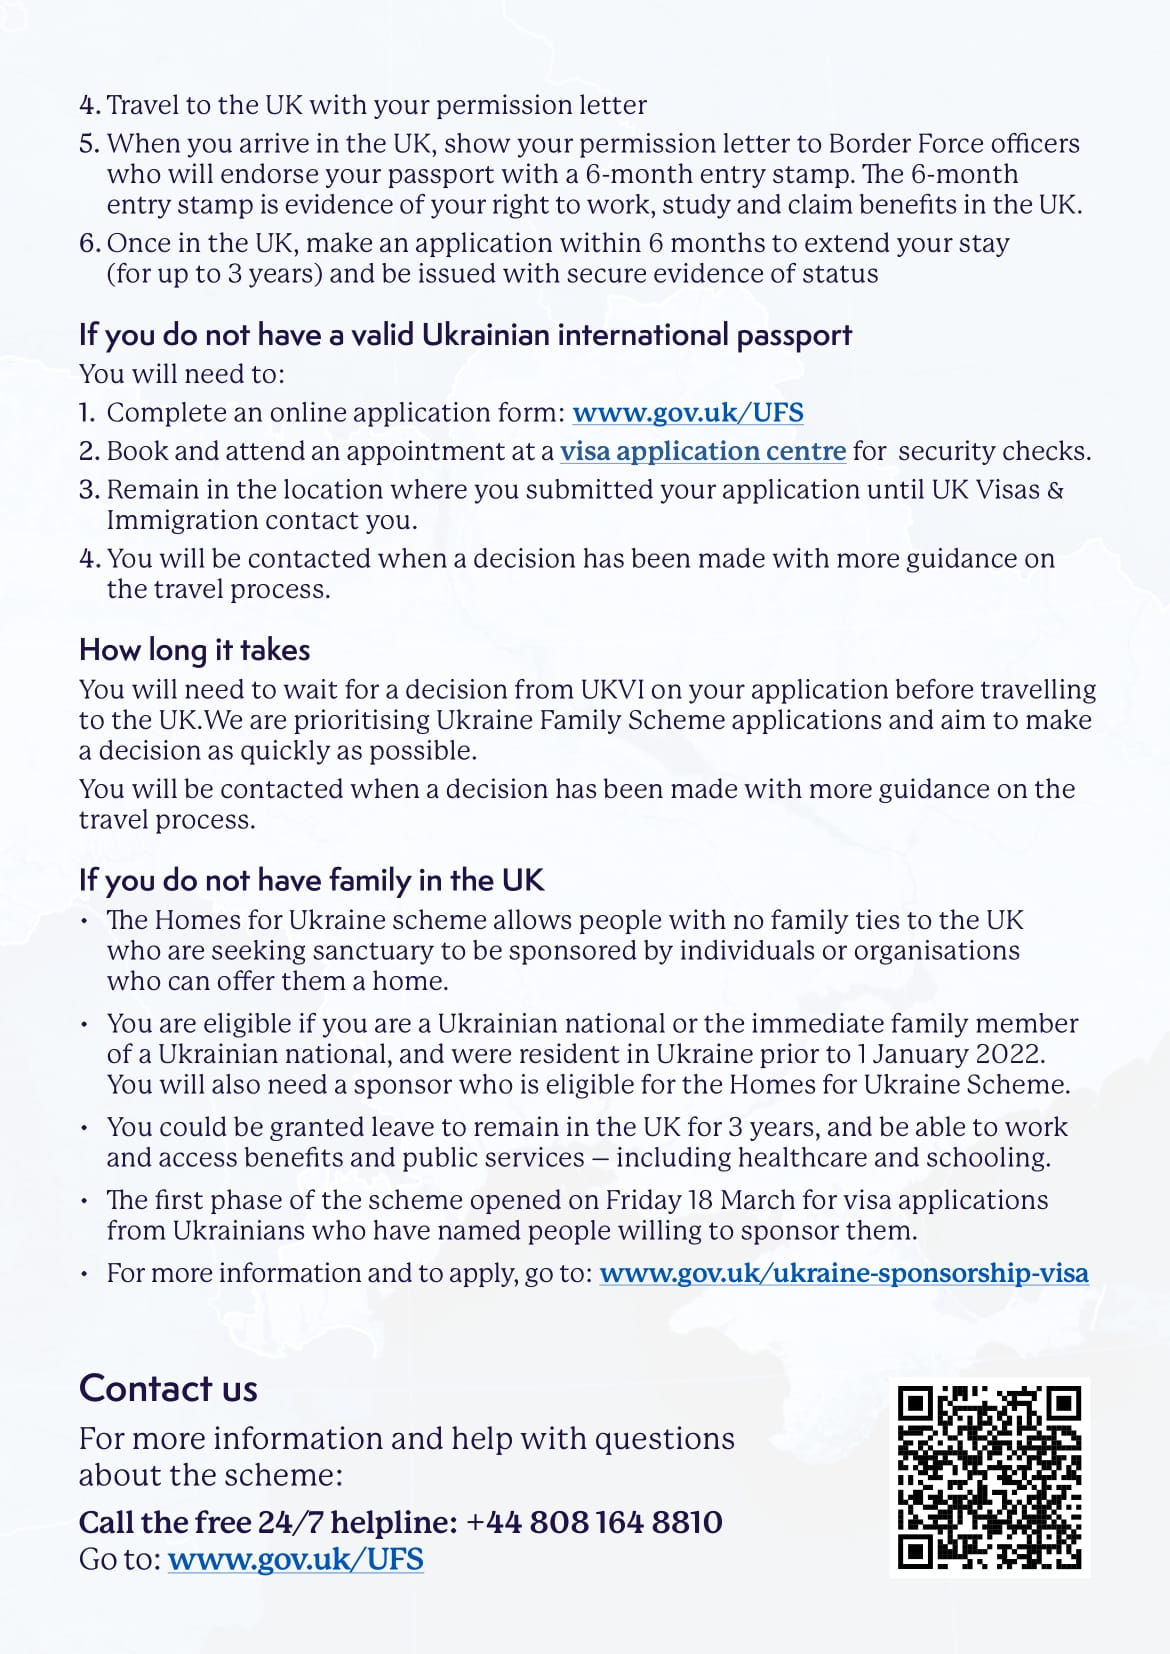  Informacja dotyczący możliwości wyjazdów ukraińskich uchodźców do Wielkiej Brytanii 